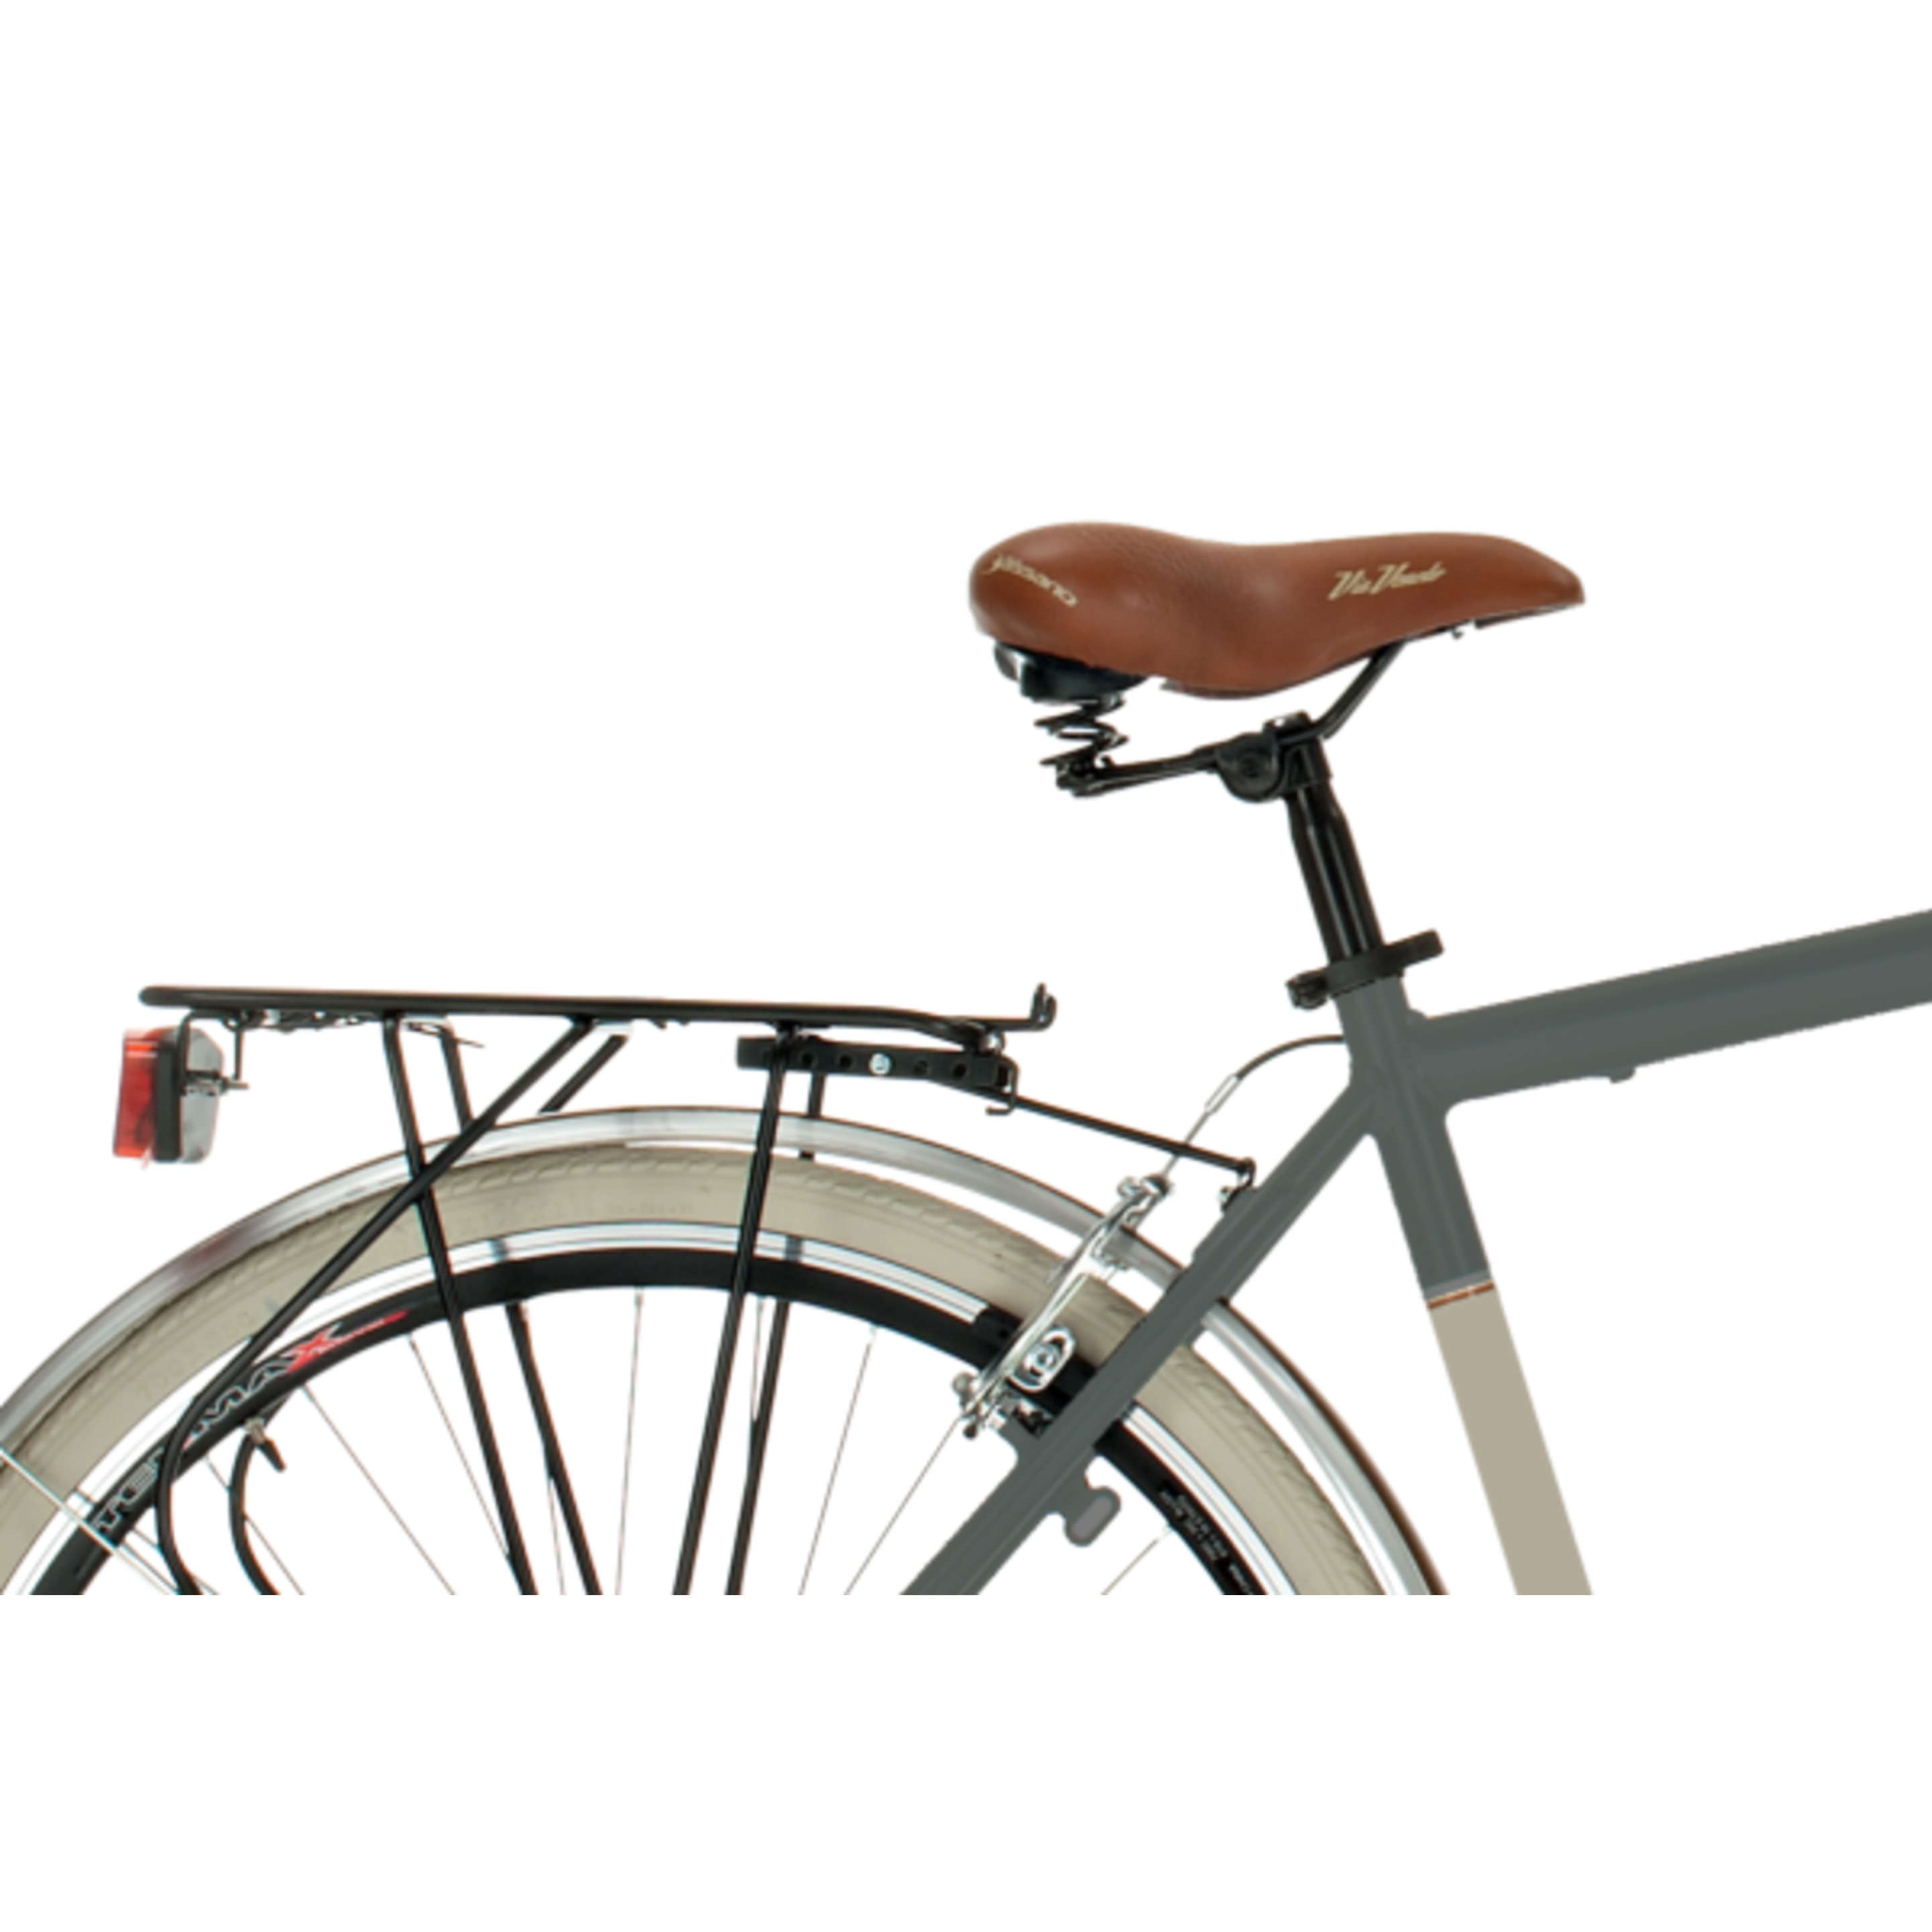 Bicicleta De Ciudad  Airbici 605am Elegance - Gris - Vintage, paseo, ciudad  MKP